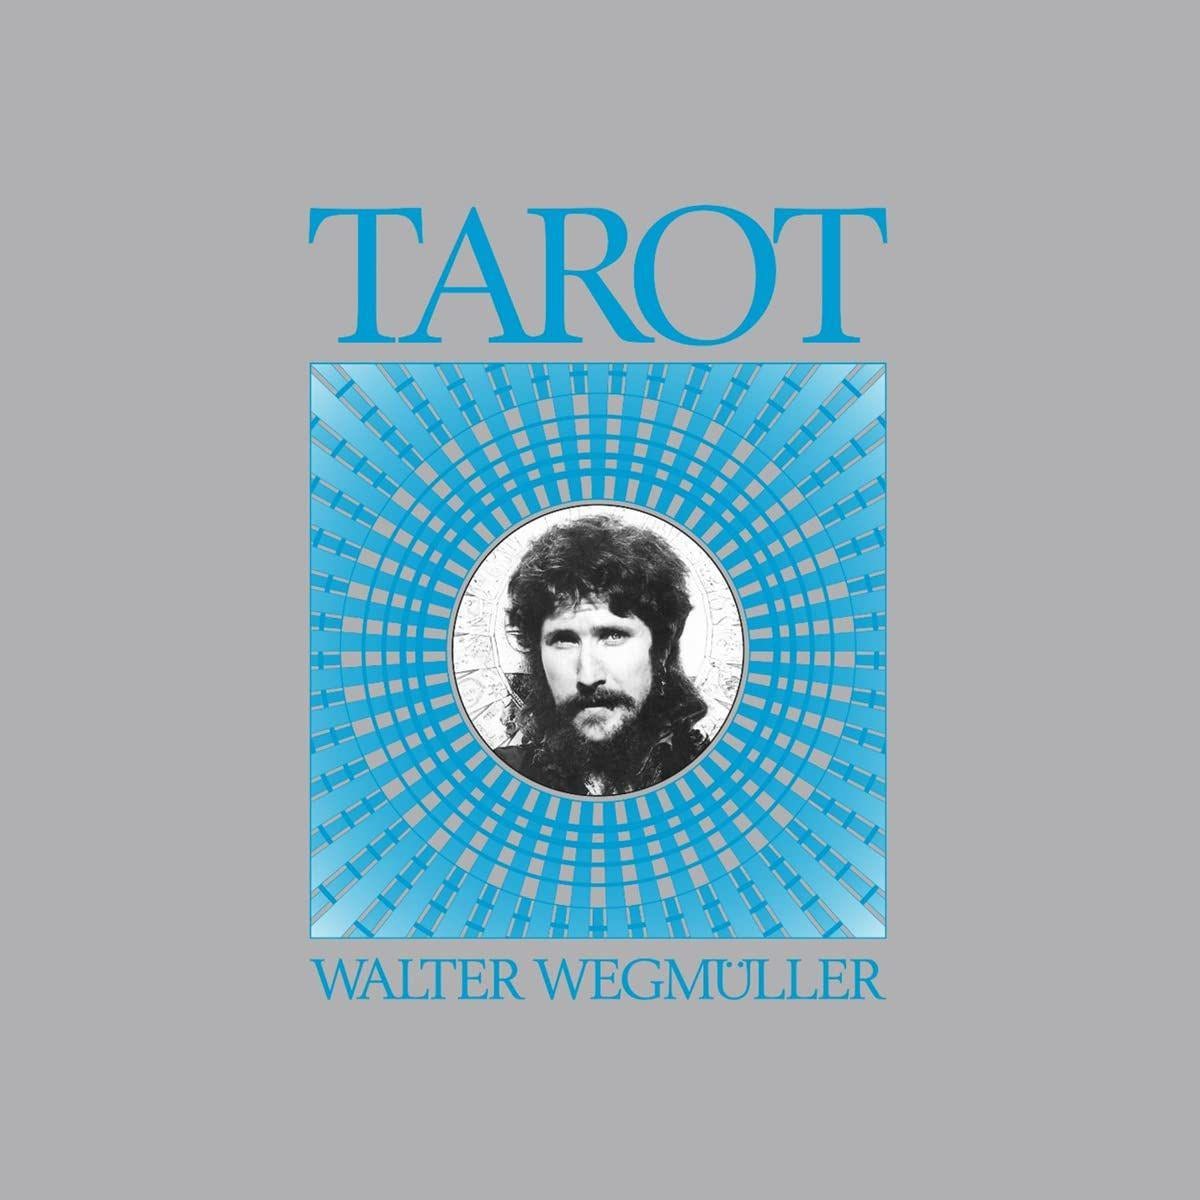 Walter Wegmuller - Tarot 2LP (2LP Version, NO BOX SET)